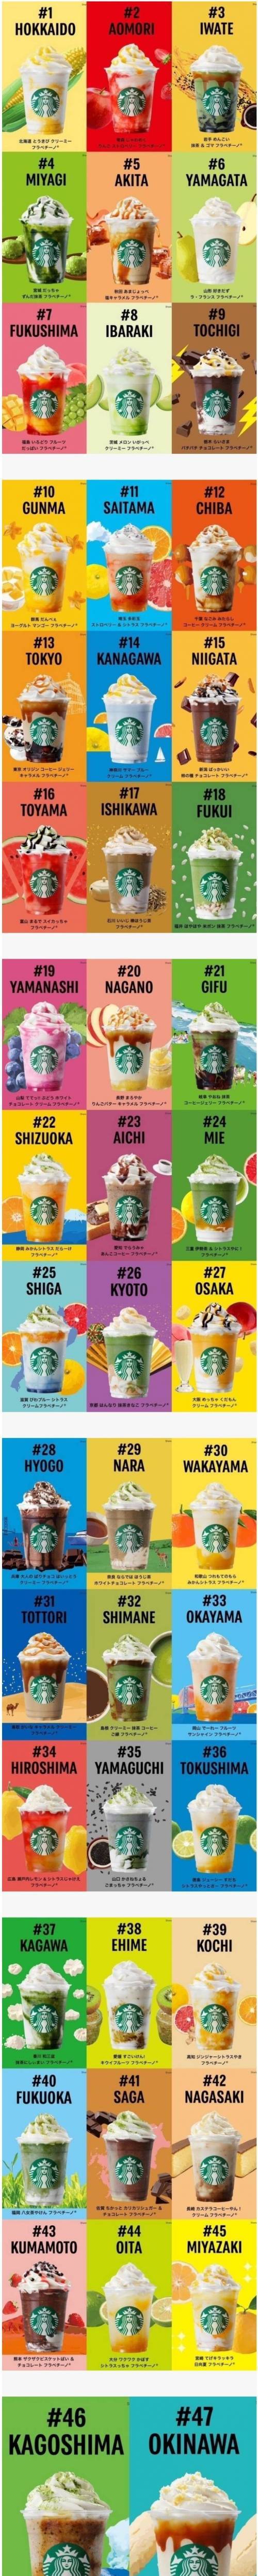 [스압] 일본의 47가지 맛 스타벅스 메뉴.jpg